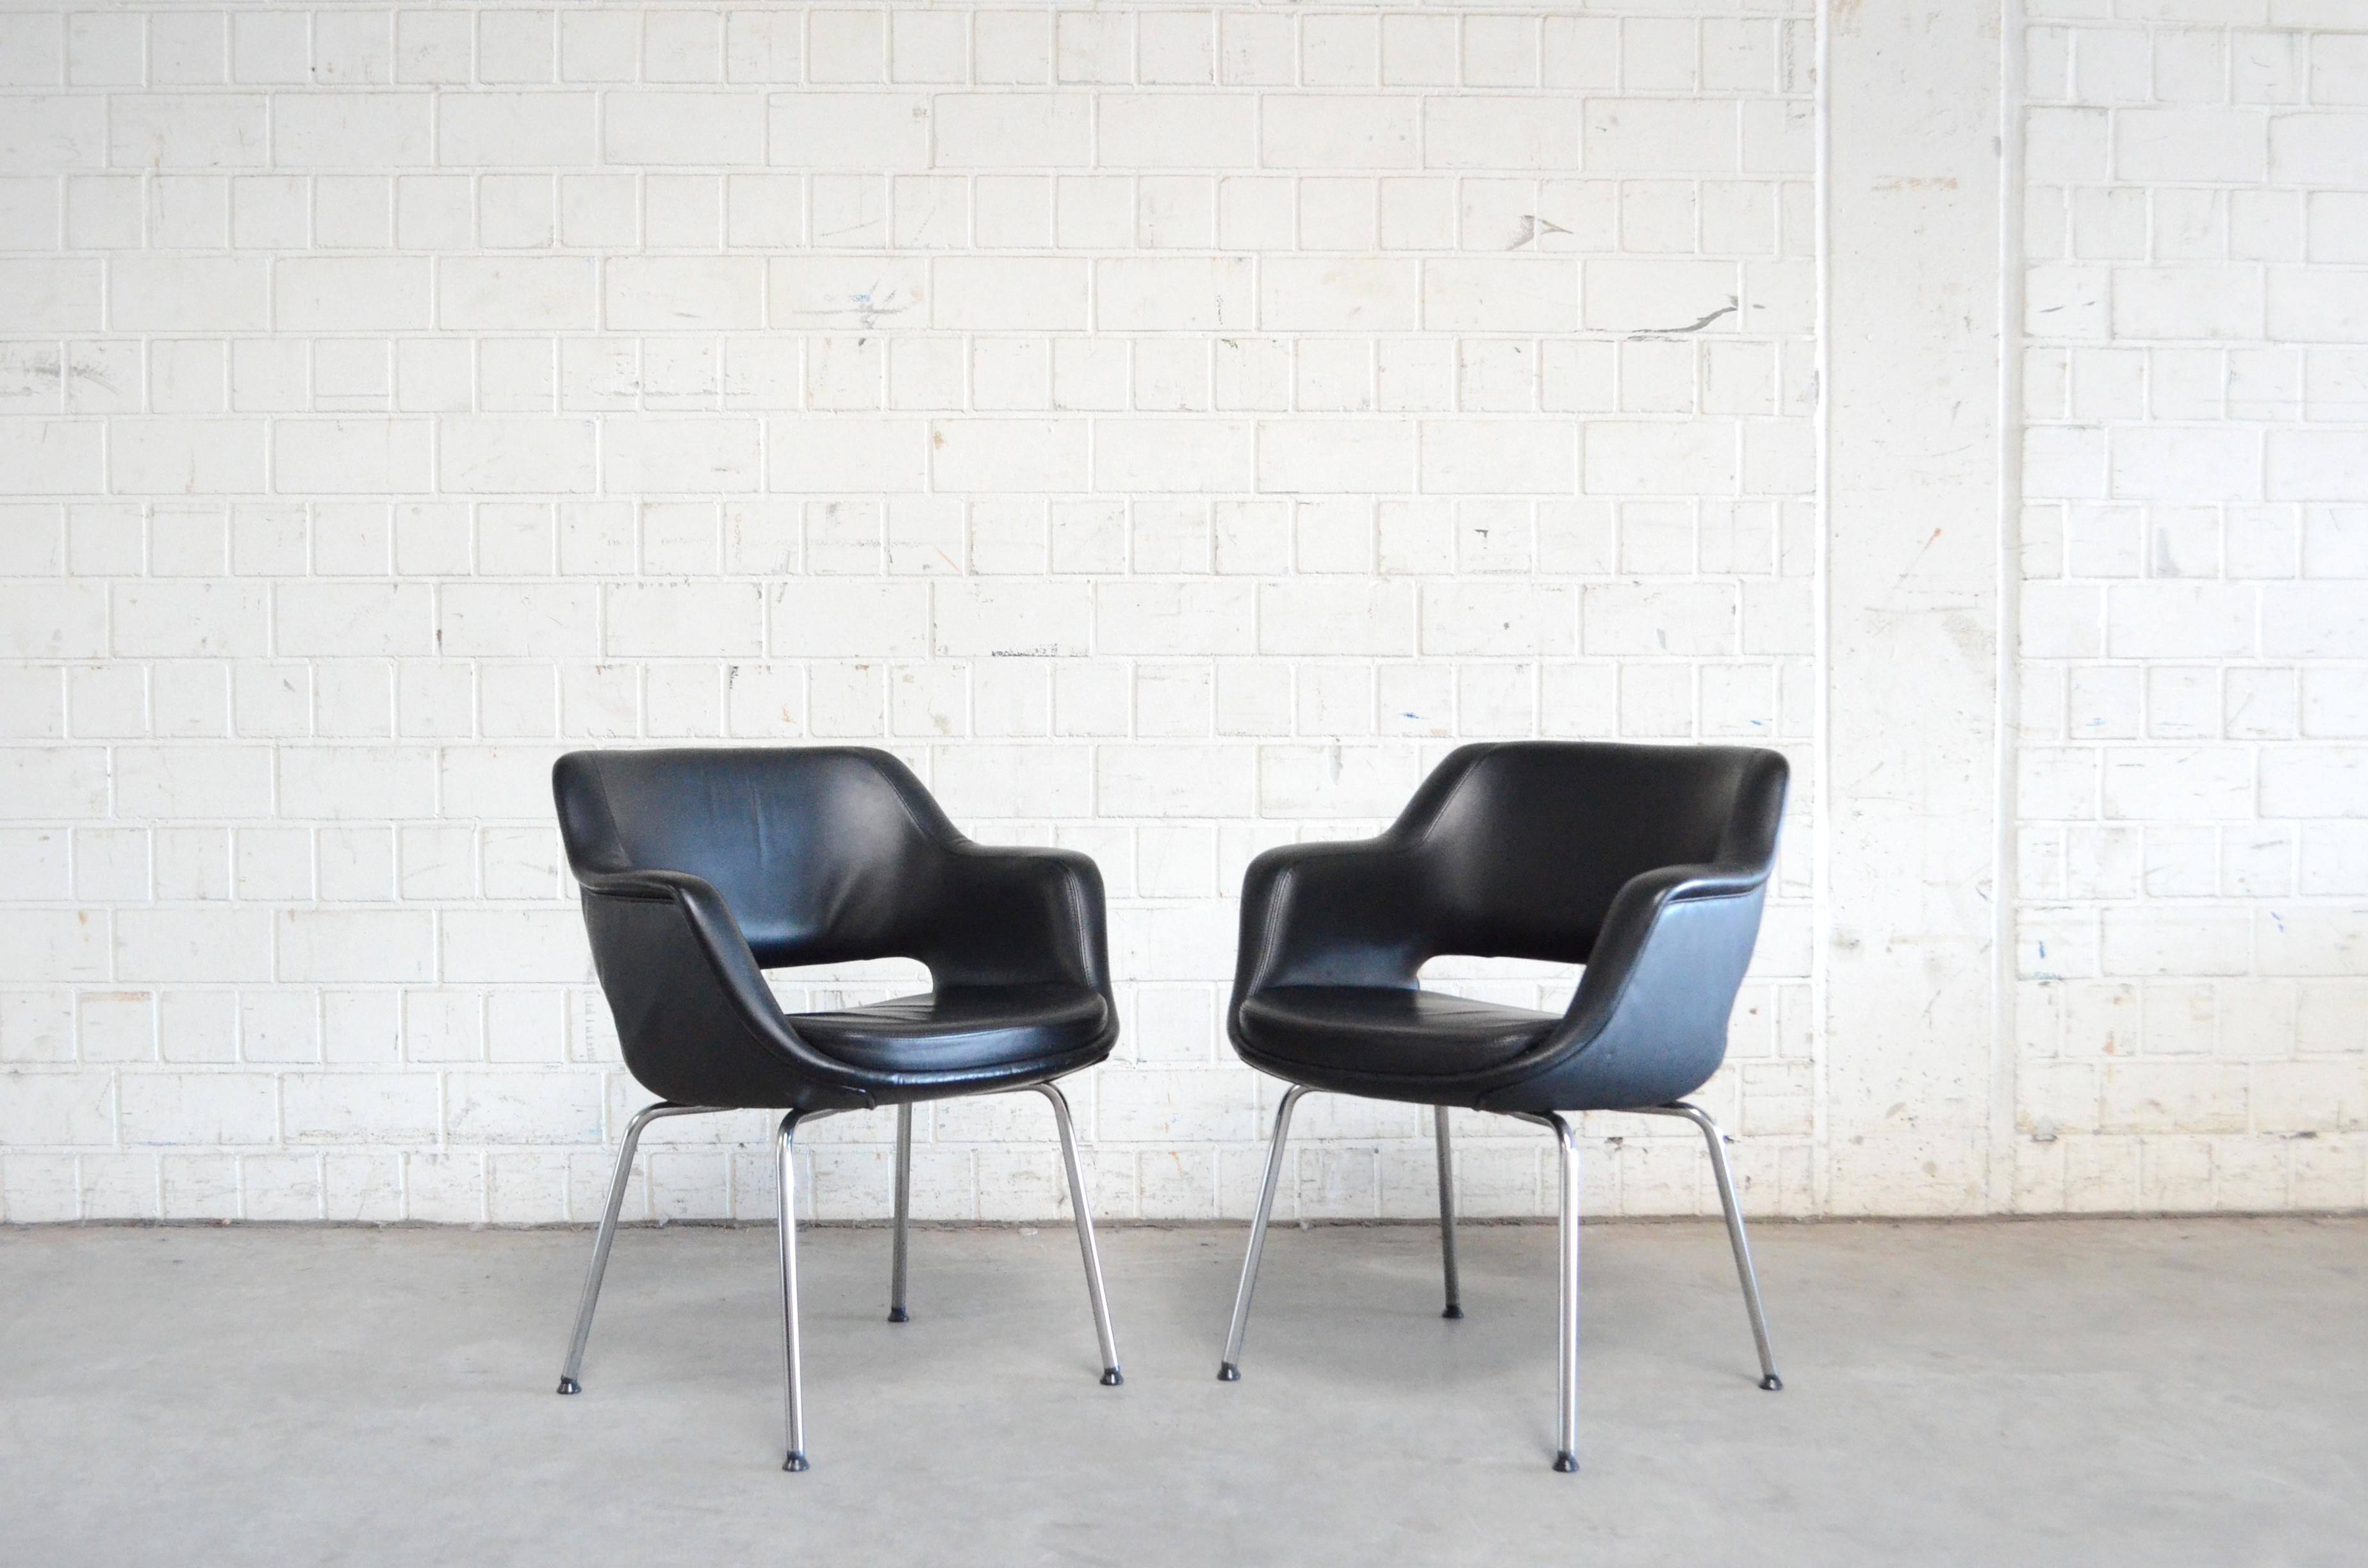 Dieses Modell Kilta wurde 1955 vom finnischen Designer Olli Mannermaa für Martela entworfen.
Der Kilta-Stuhl ist ein finnischer Designklassiker. Das zeitlose Design und der bequeme Sitz von Kilta garantieren seine anhaltende Beliebtheit.
Es ist